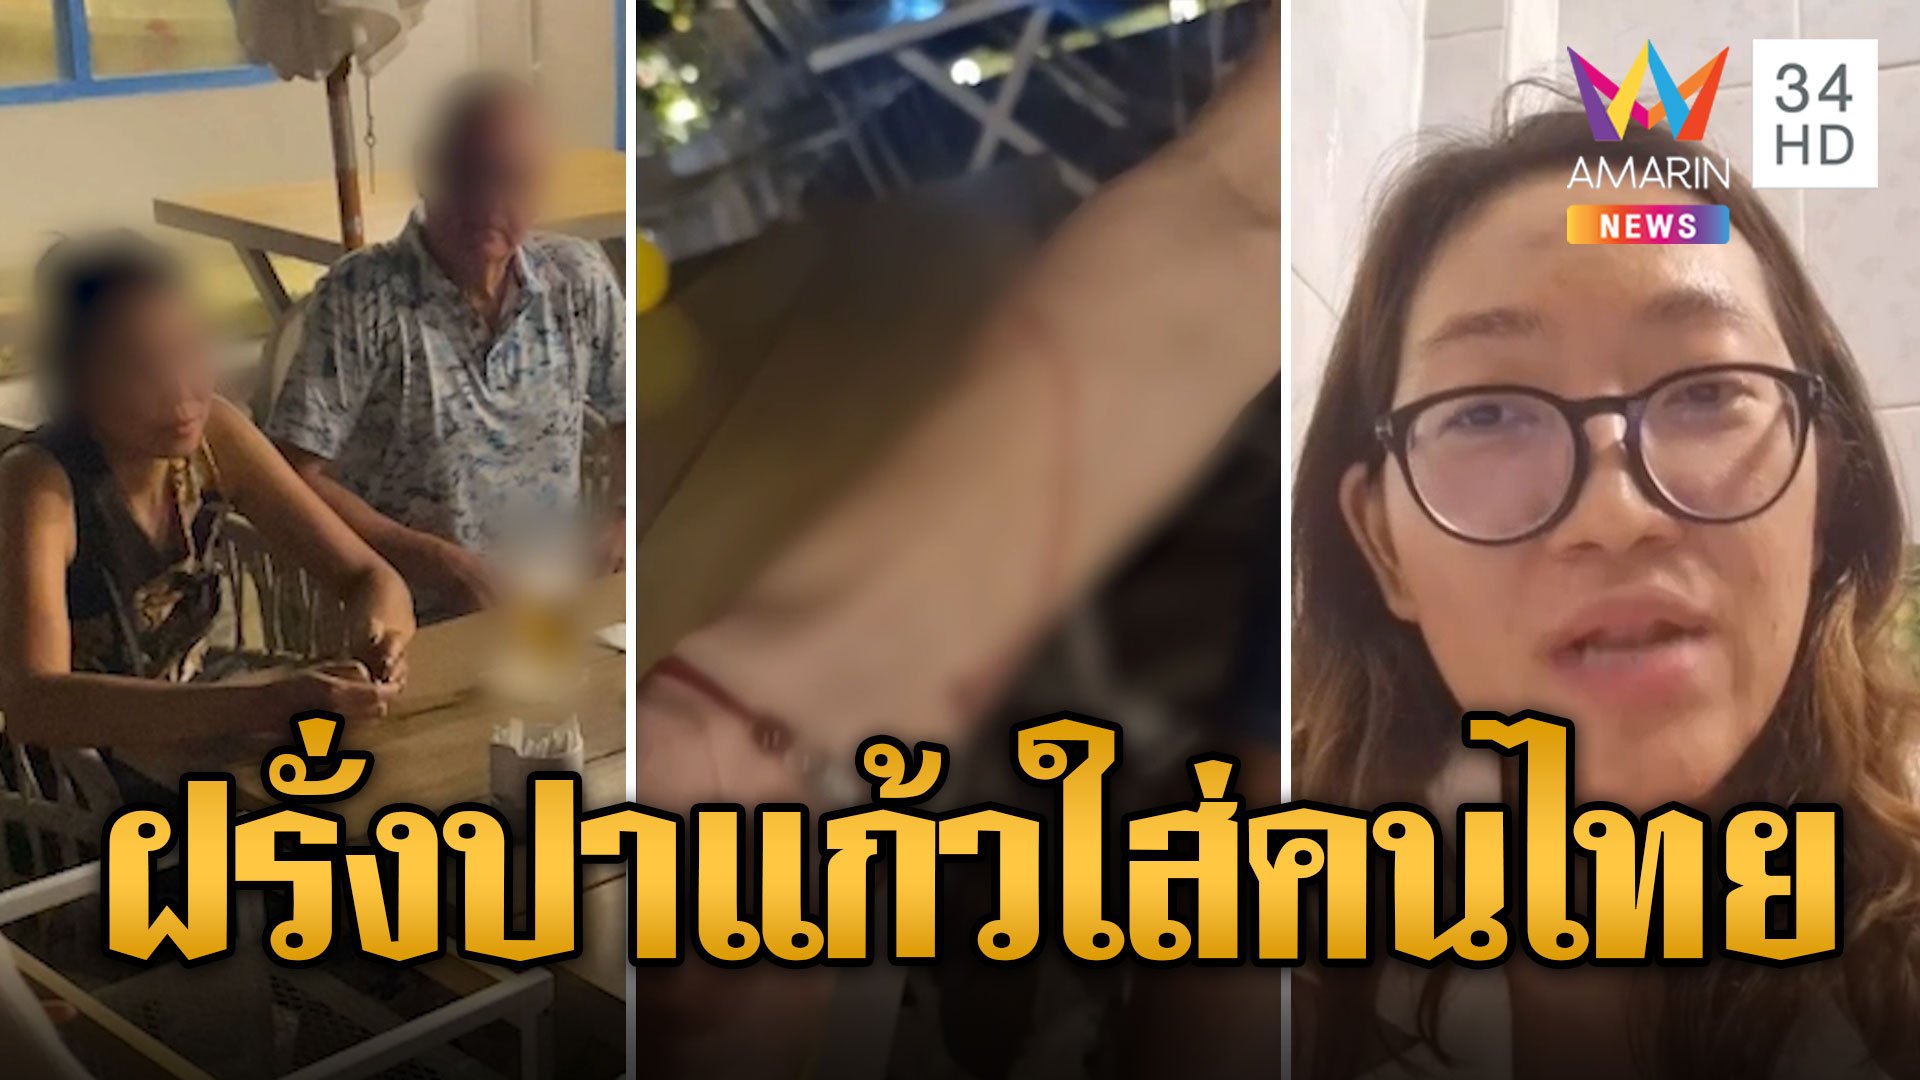 ฝรั่งหัวร้อน ปาแก้วใส่สาวไทยเจ็บ ปัดรับผิดชอบ | ข่าวเที่ยงอมรินทร์ | 3 มี.ค. 67 | AMARIN TVHD34